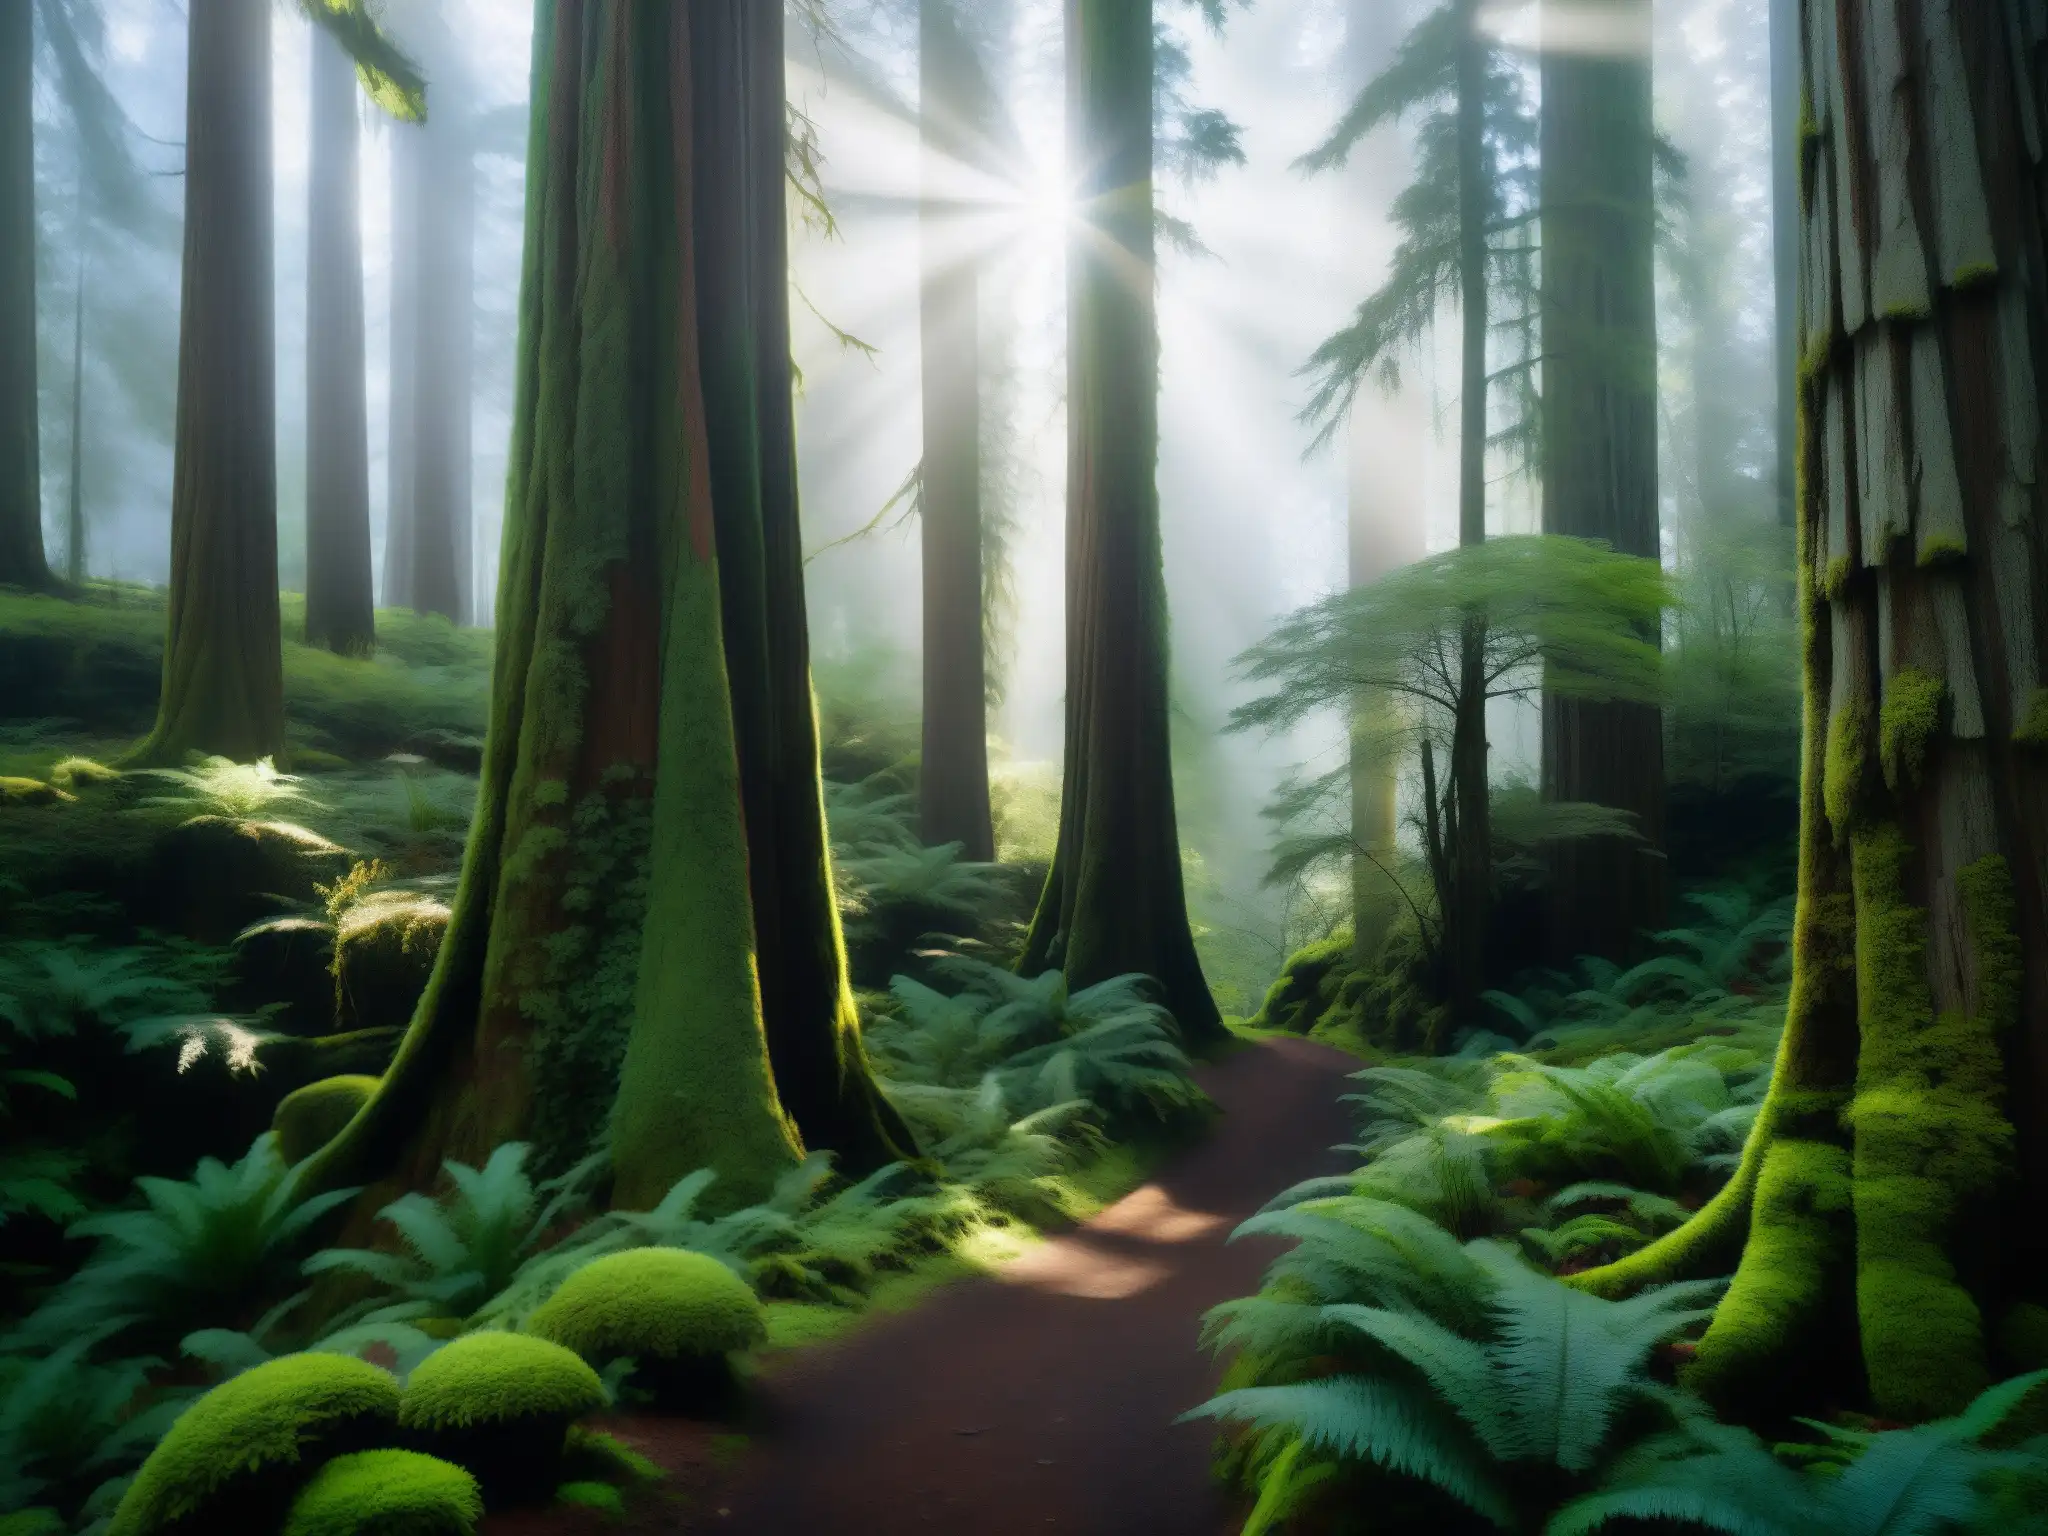 Un bosque misterioso y enigmático con árboles de secuoya, sendero serpenteante y atmósfera de misterio, desvelando el mito del Bigfoot desenmascarado